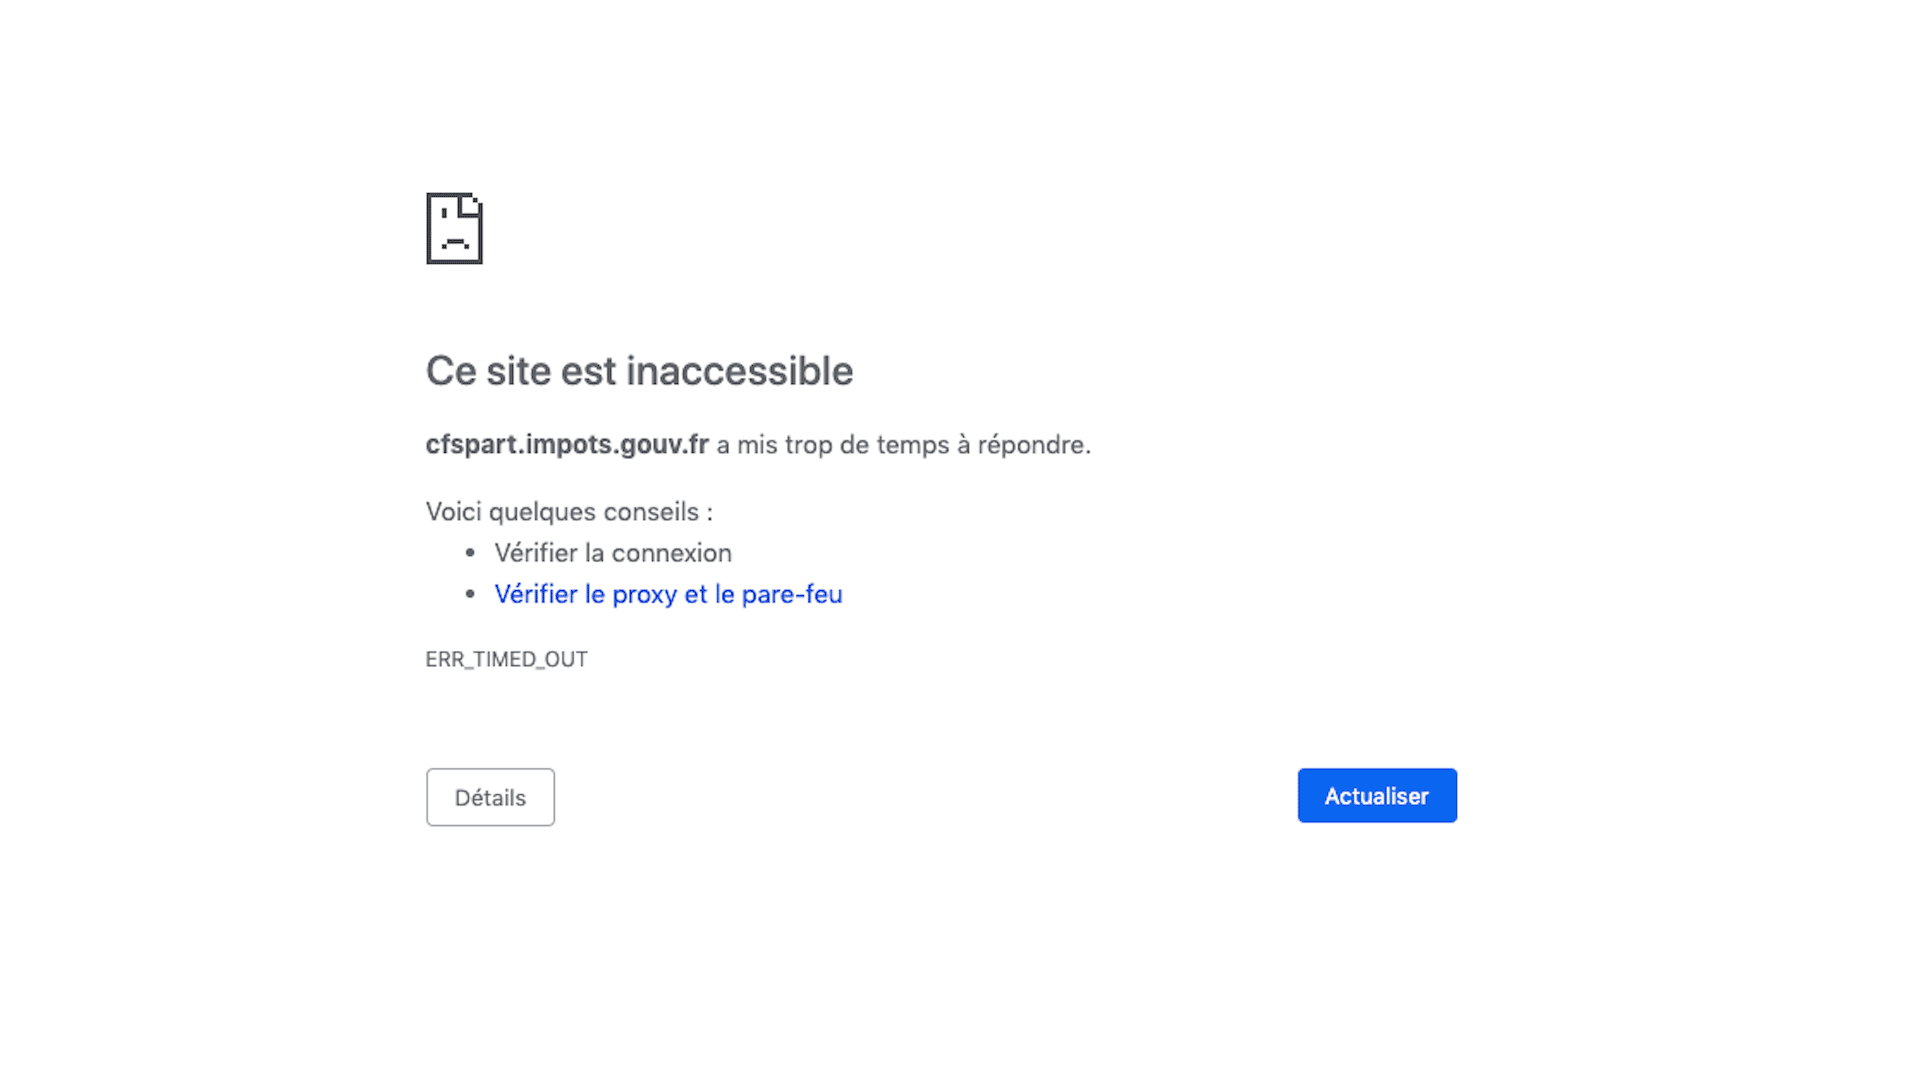 Le site impots.gouv.fr a crashé.